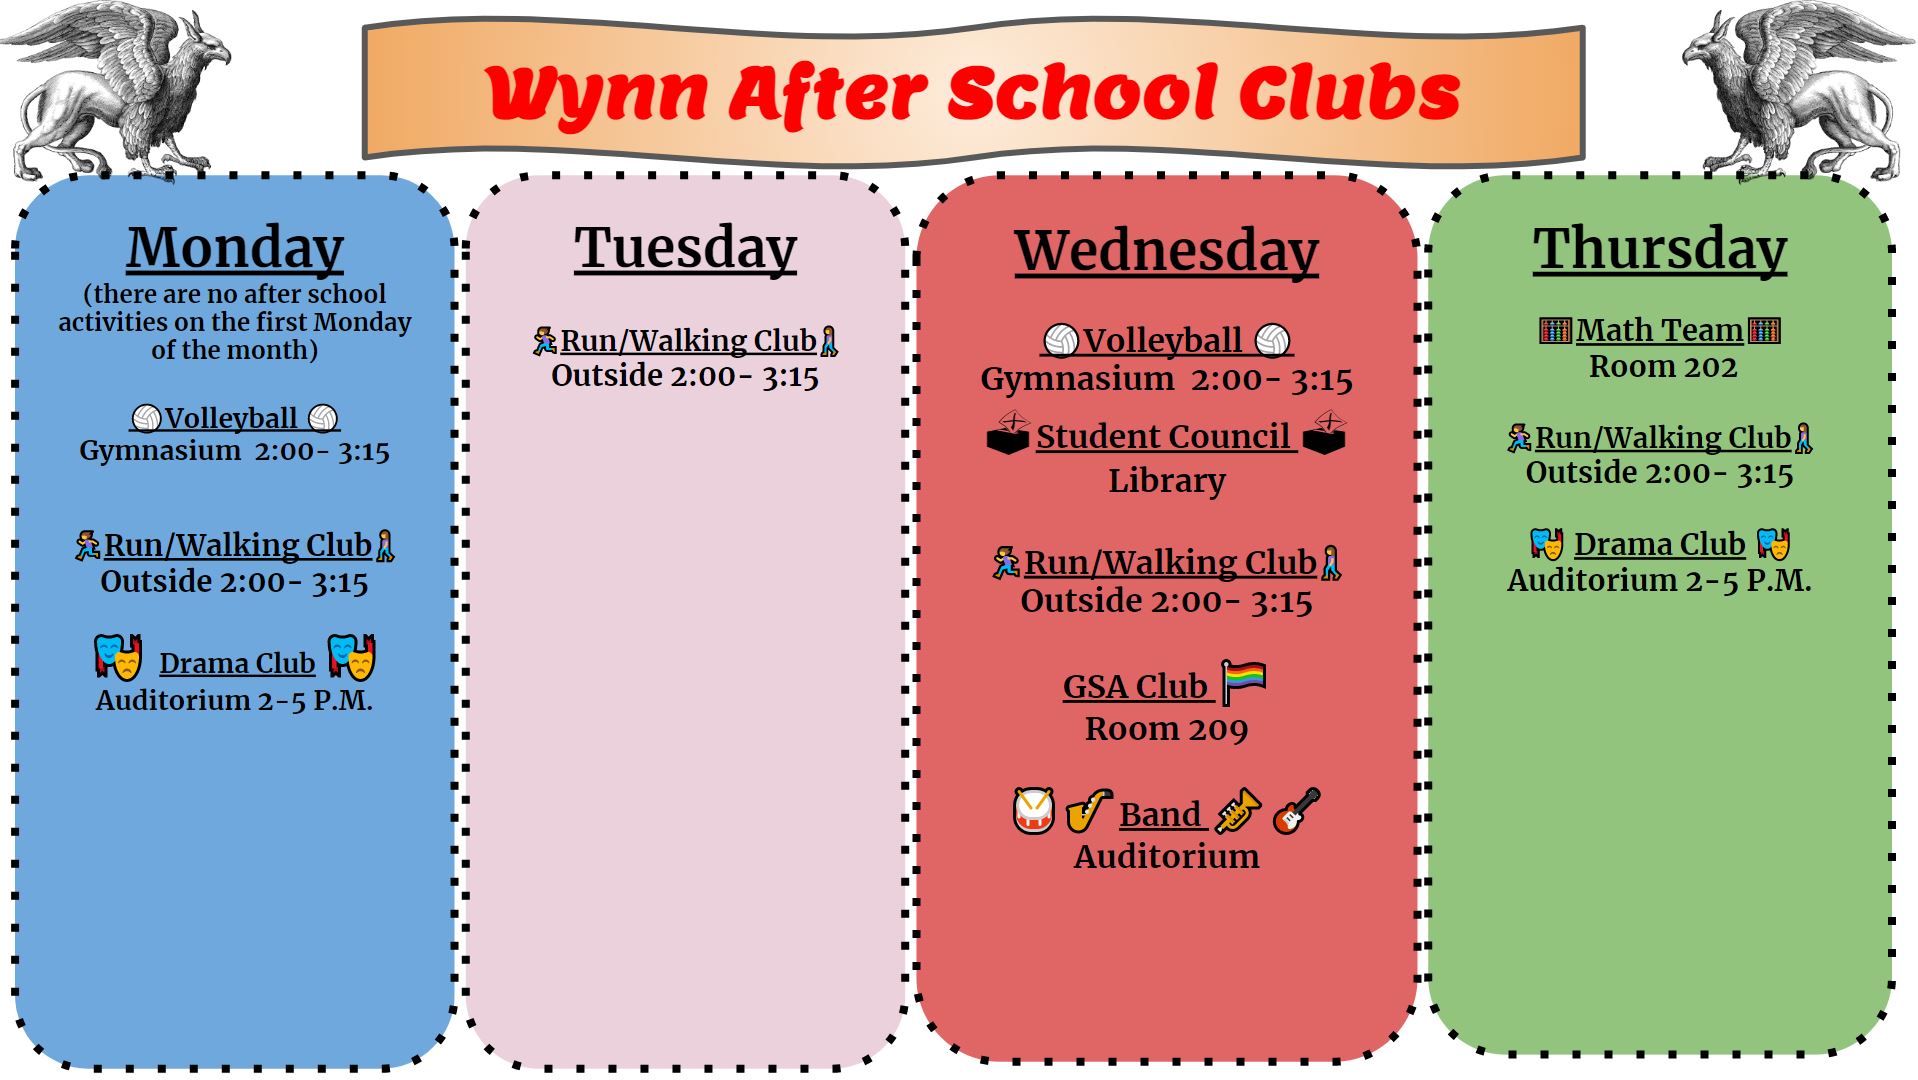 After School Clubs - John W. Wynn Middle School